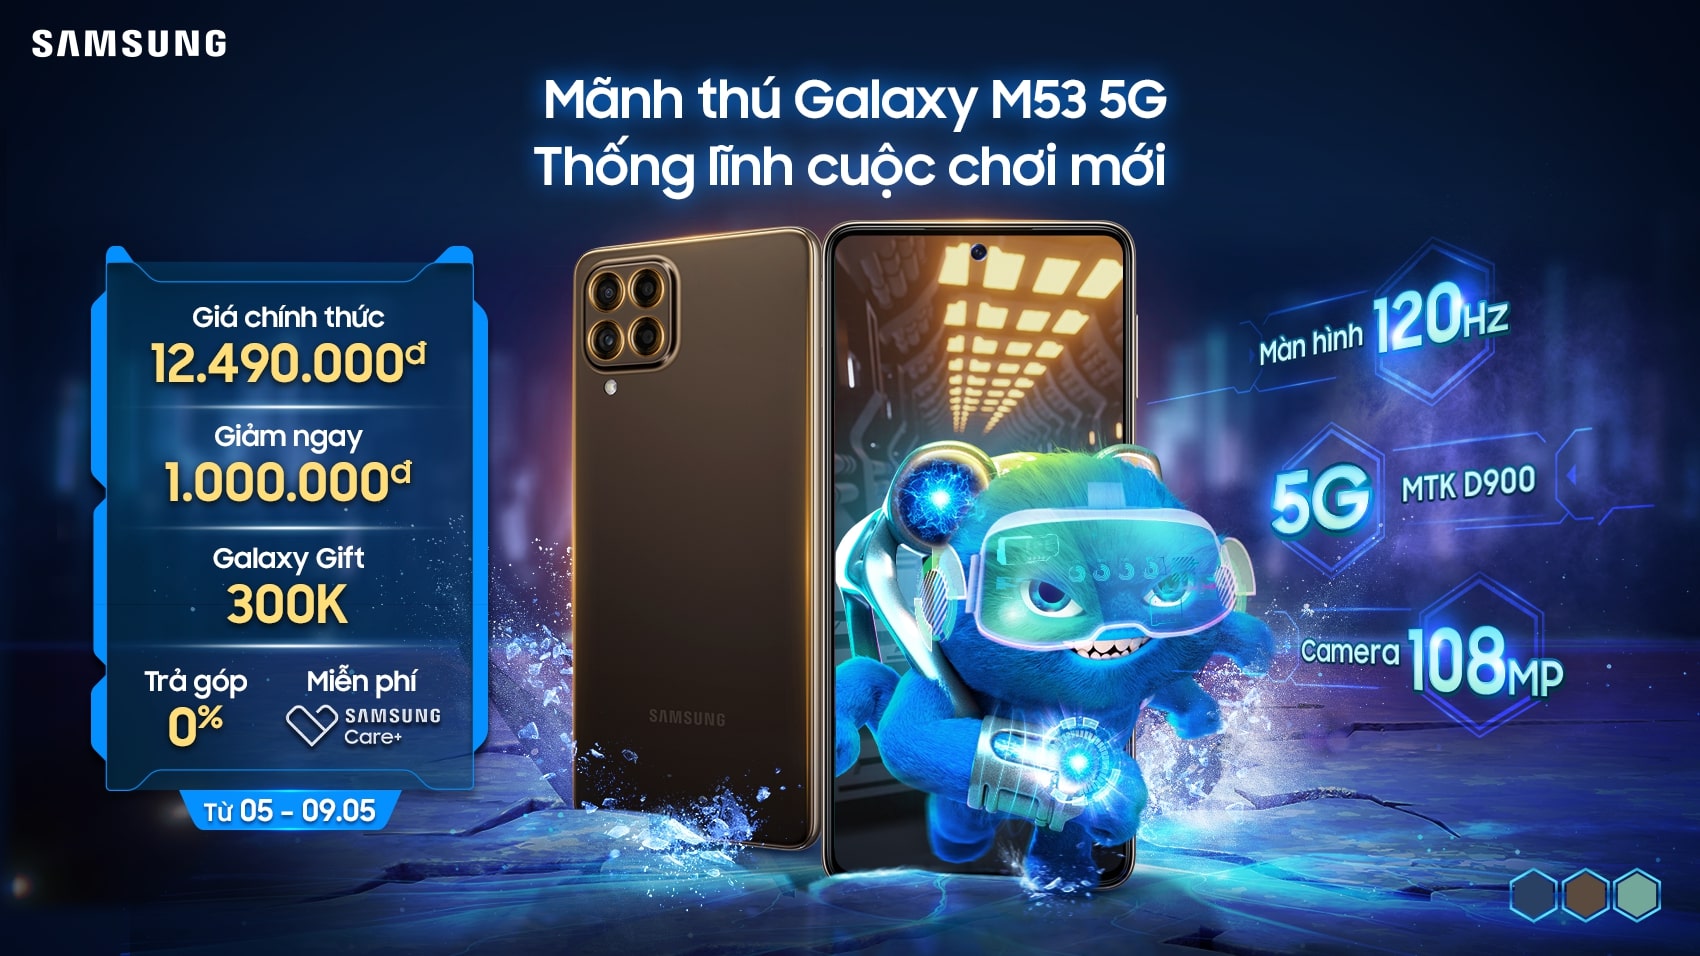 Samsung ra mắt Mãnh thú Galaxy M53 5G: Thống lĩnh cuộc chơi mới với hiệu năng cực đại